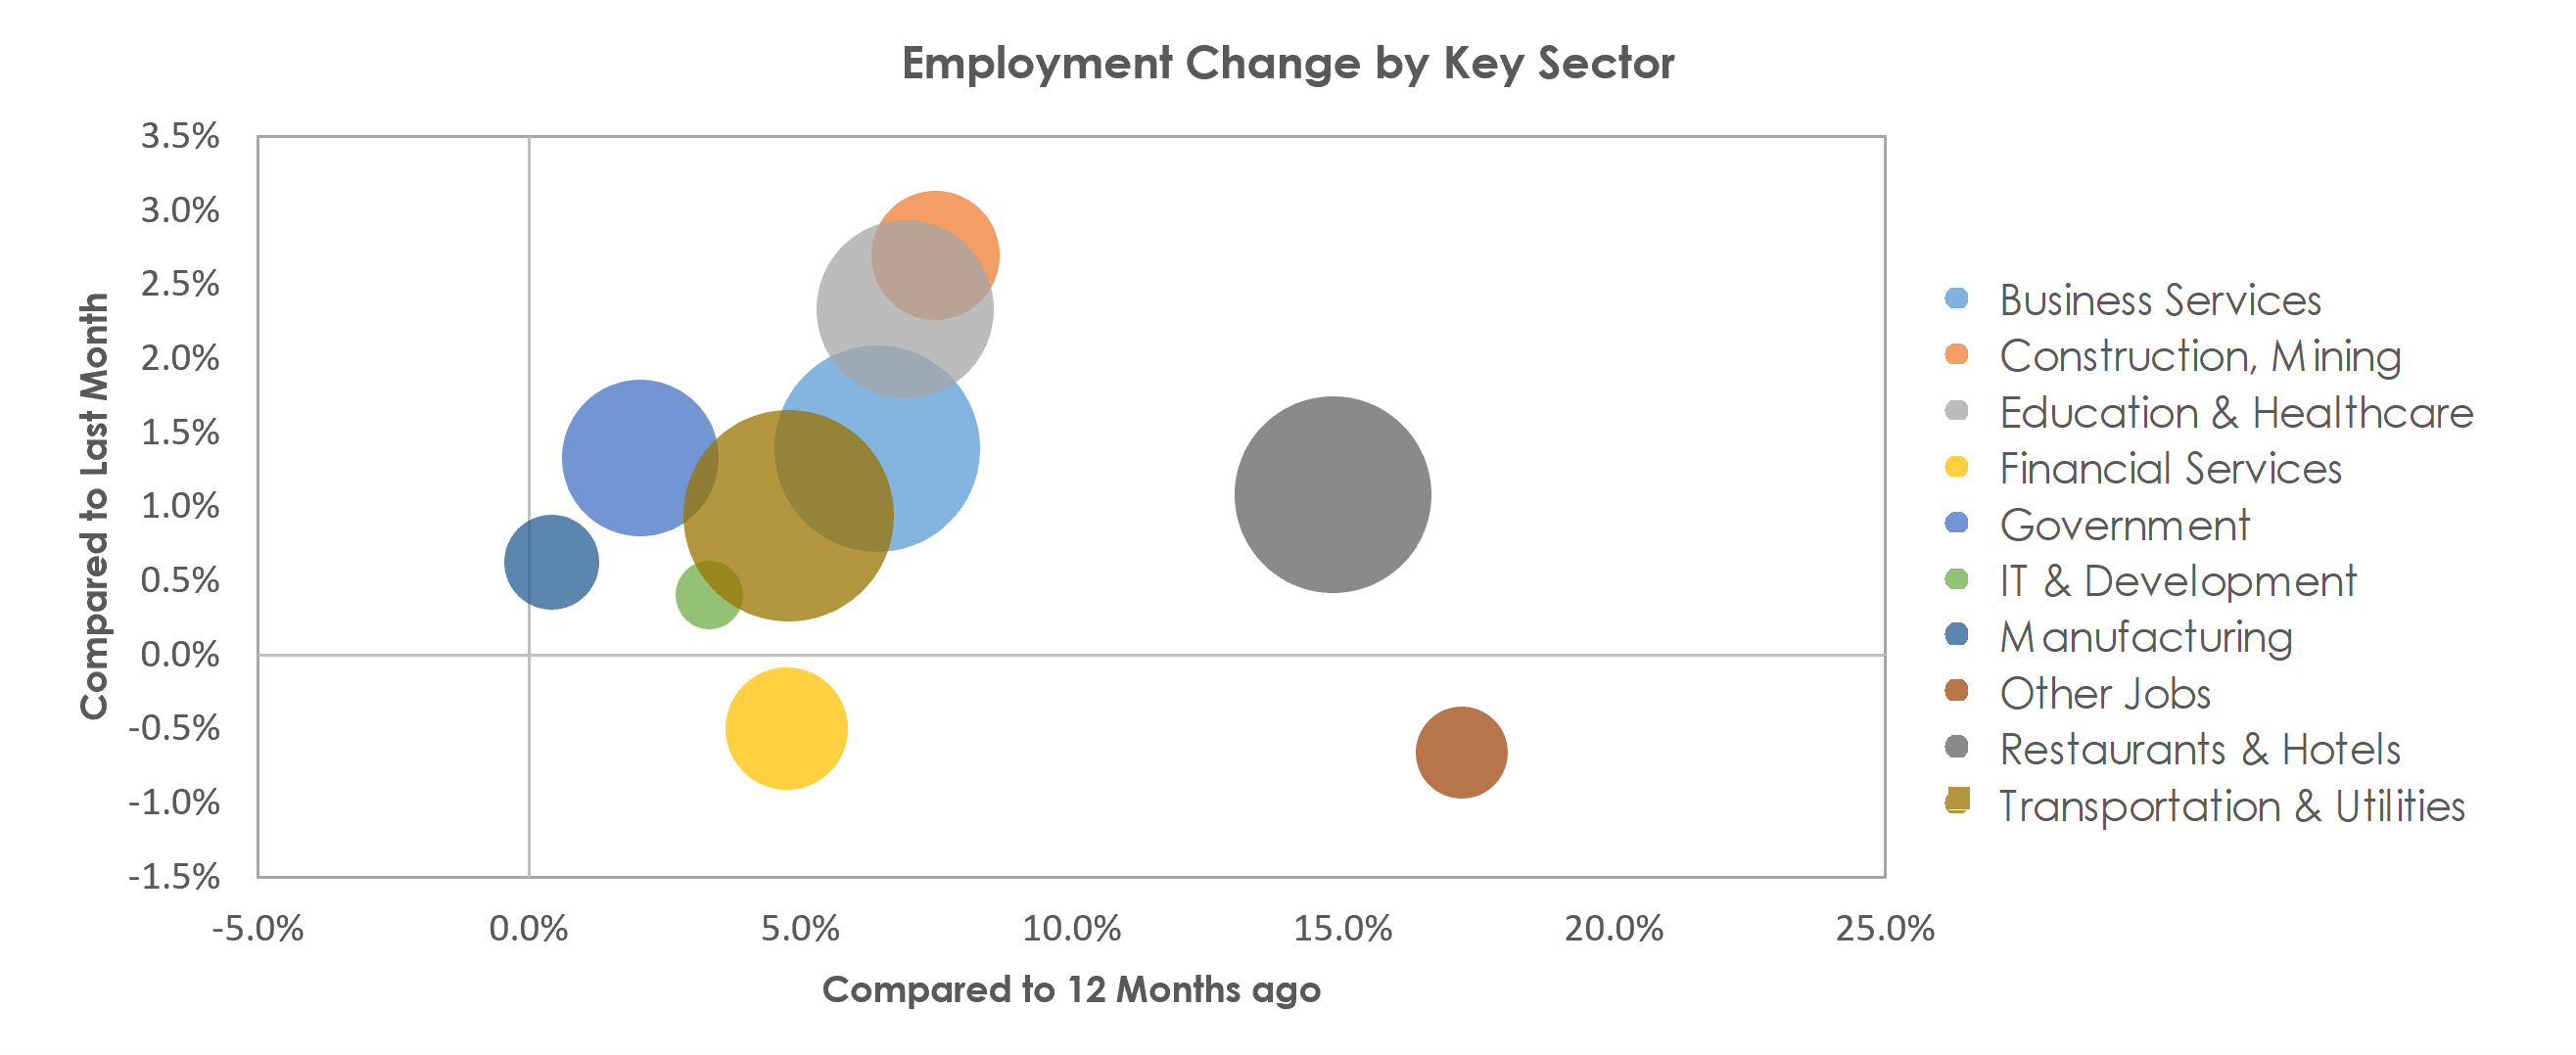 Orlando-Kissimmee-Sanford, FL Unemployment by Industry September 2021